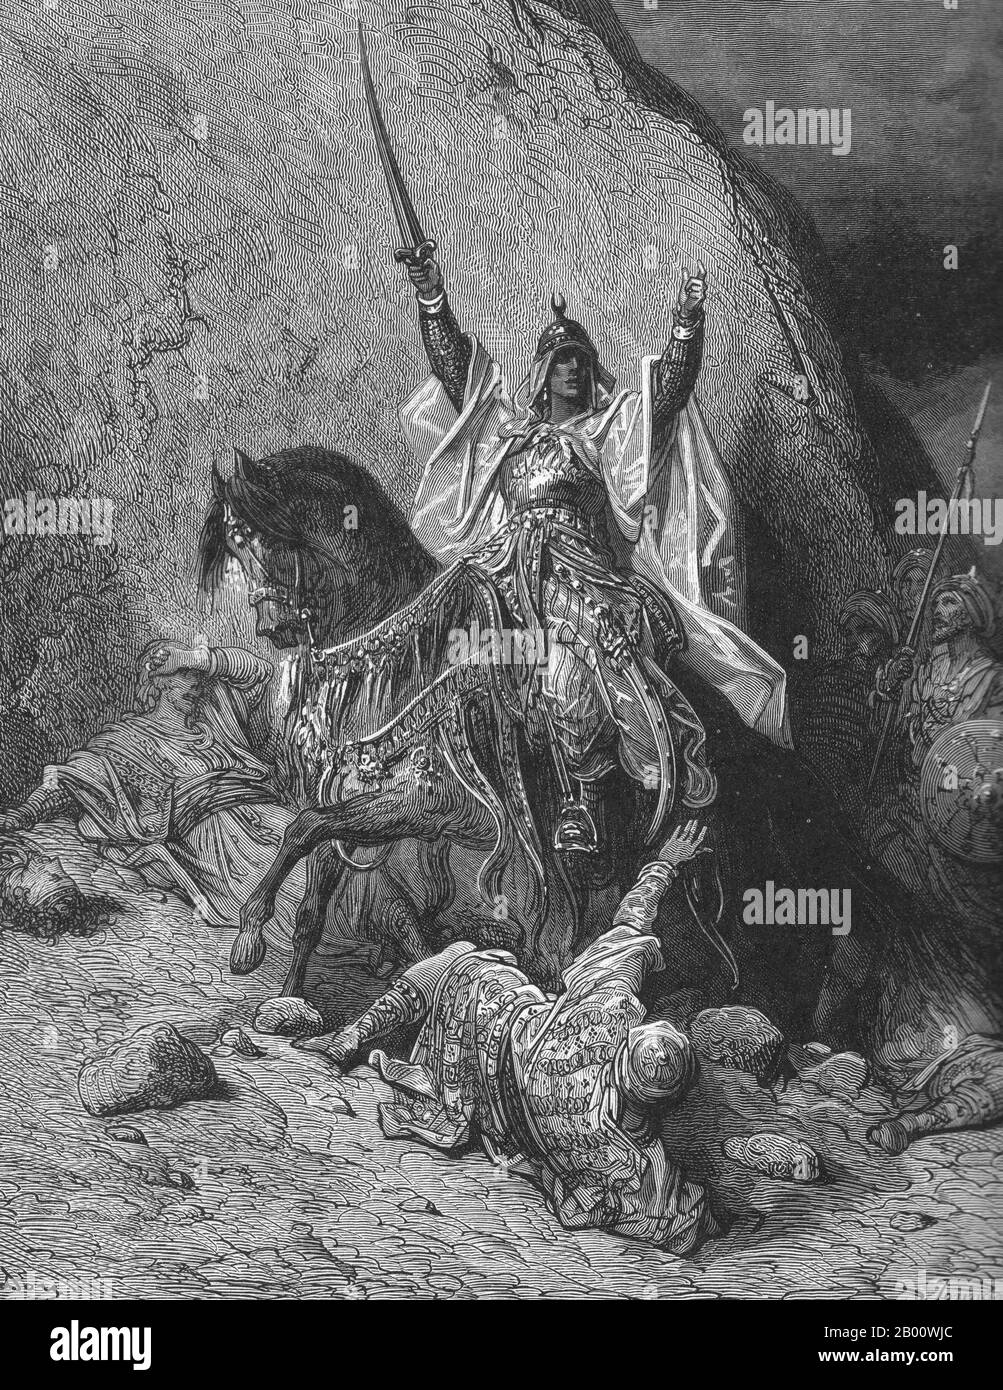 Egitto/Siria: Rappresentazione ottocentesca di un saladino vittorioso. Incisione di Gustave Doré (1832-1883), XIX secolo. Ṣalāḥ ad-Dīn Yūsuf ibn Ayyūb (c.. 1138 – 4 marzo 1193), meglio conosciuto nel mondo occidentale come Saladin, è stato un musulmano curdo, che divenne il primo sultano Ayyubid d'Egitto e Siria. Guidò l'opposizione islamica ai Franchi e ad altri Crociati europei nel Levante. All'apice del suo potere, governò Egitto, Siria, Mesopotamia, Hejaz e Yemen. Guidò i musulmani contro i Crociati e infine riconquistò la Palestina dal regno crociato di Gerusalemme. Foto Stock